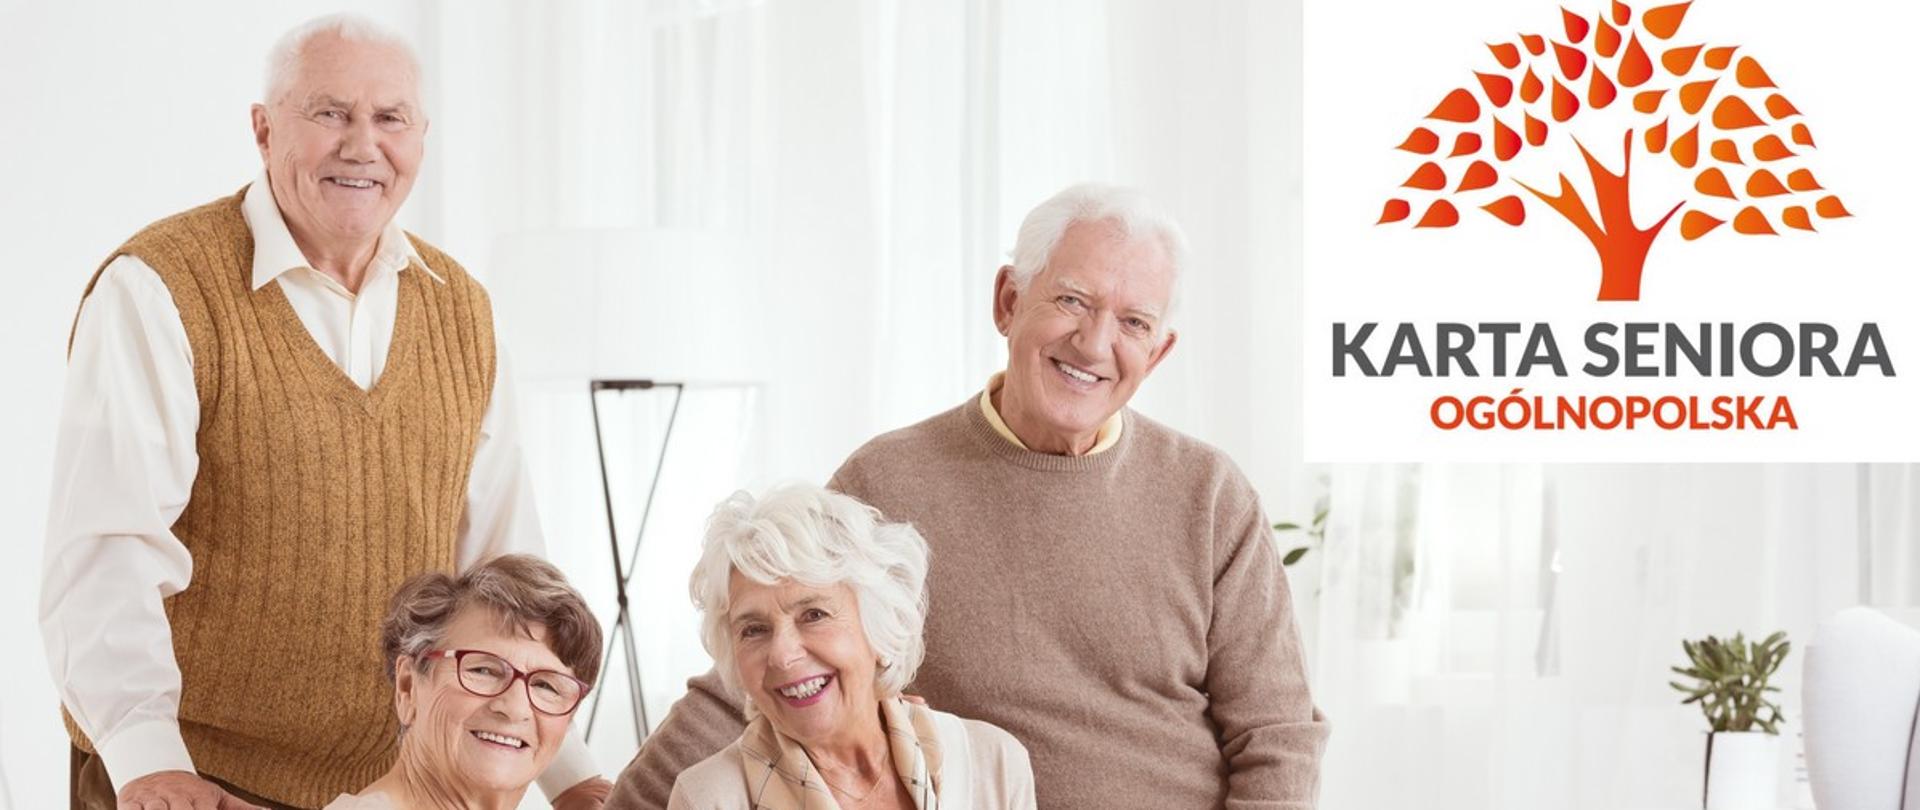 Zdjęcie przedstawia dwie seniorki i dwóch seniorów, którzy pozują uśmiechnięci w jasnym wnętrzu mieszkania. W prawym górnym rogu zdjęcia znajduje się logotyp programu.